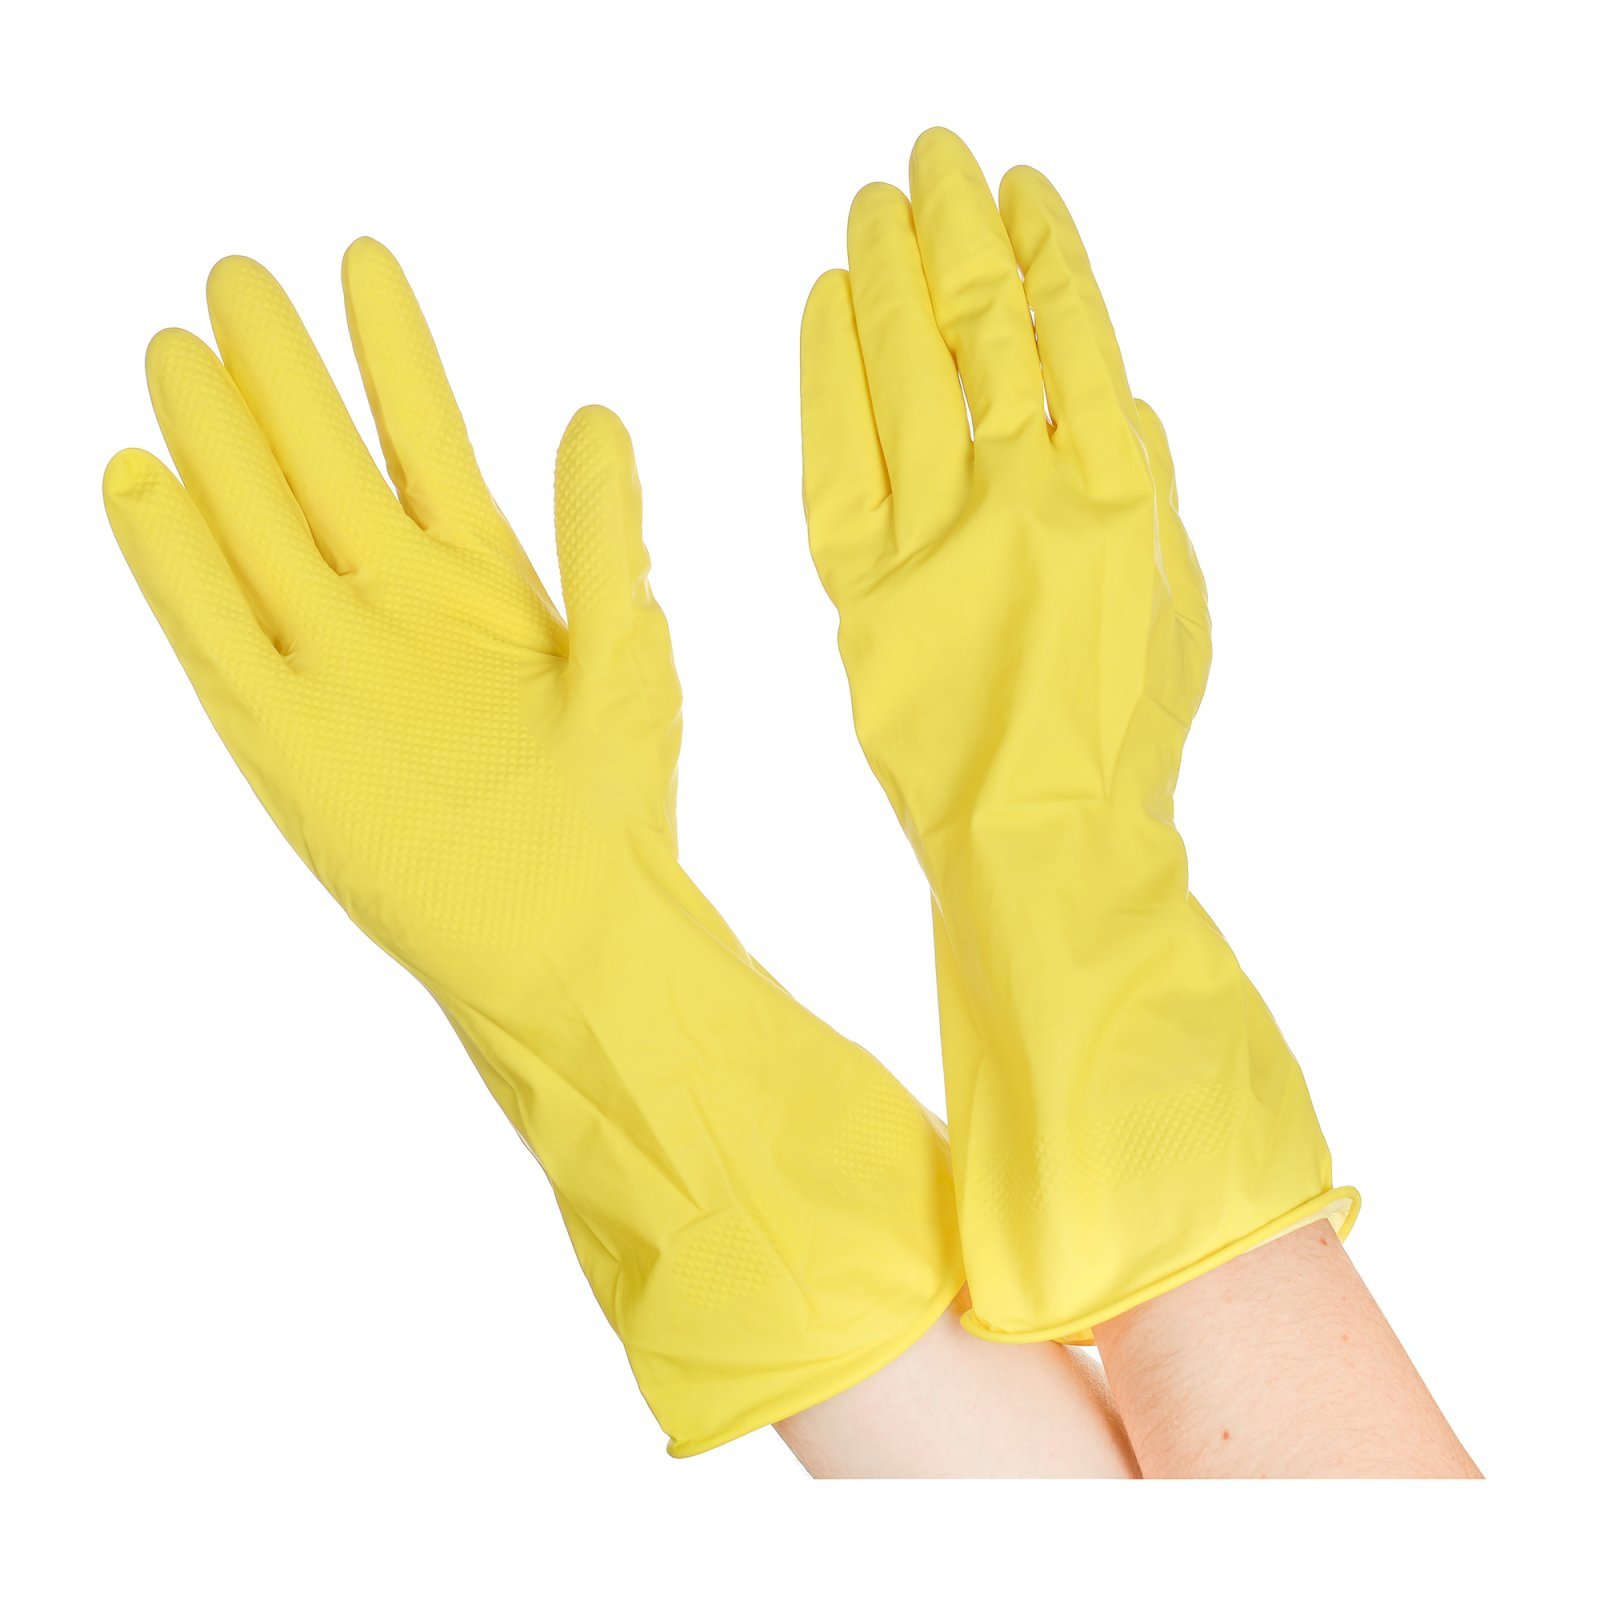 Перчатки резиновые хозяйственные Optiline (Оптилайн), с валиком. Предназначены для бытового использования во время уборки, стирки, мытья автомобиля, садовых работ. Размер М. Цвет желтый.